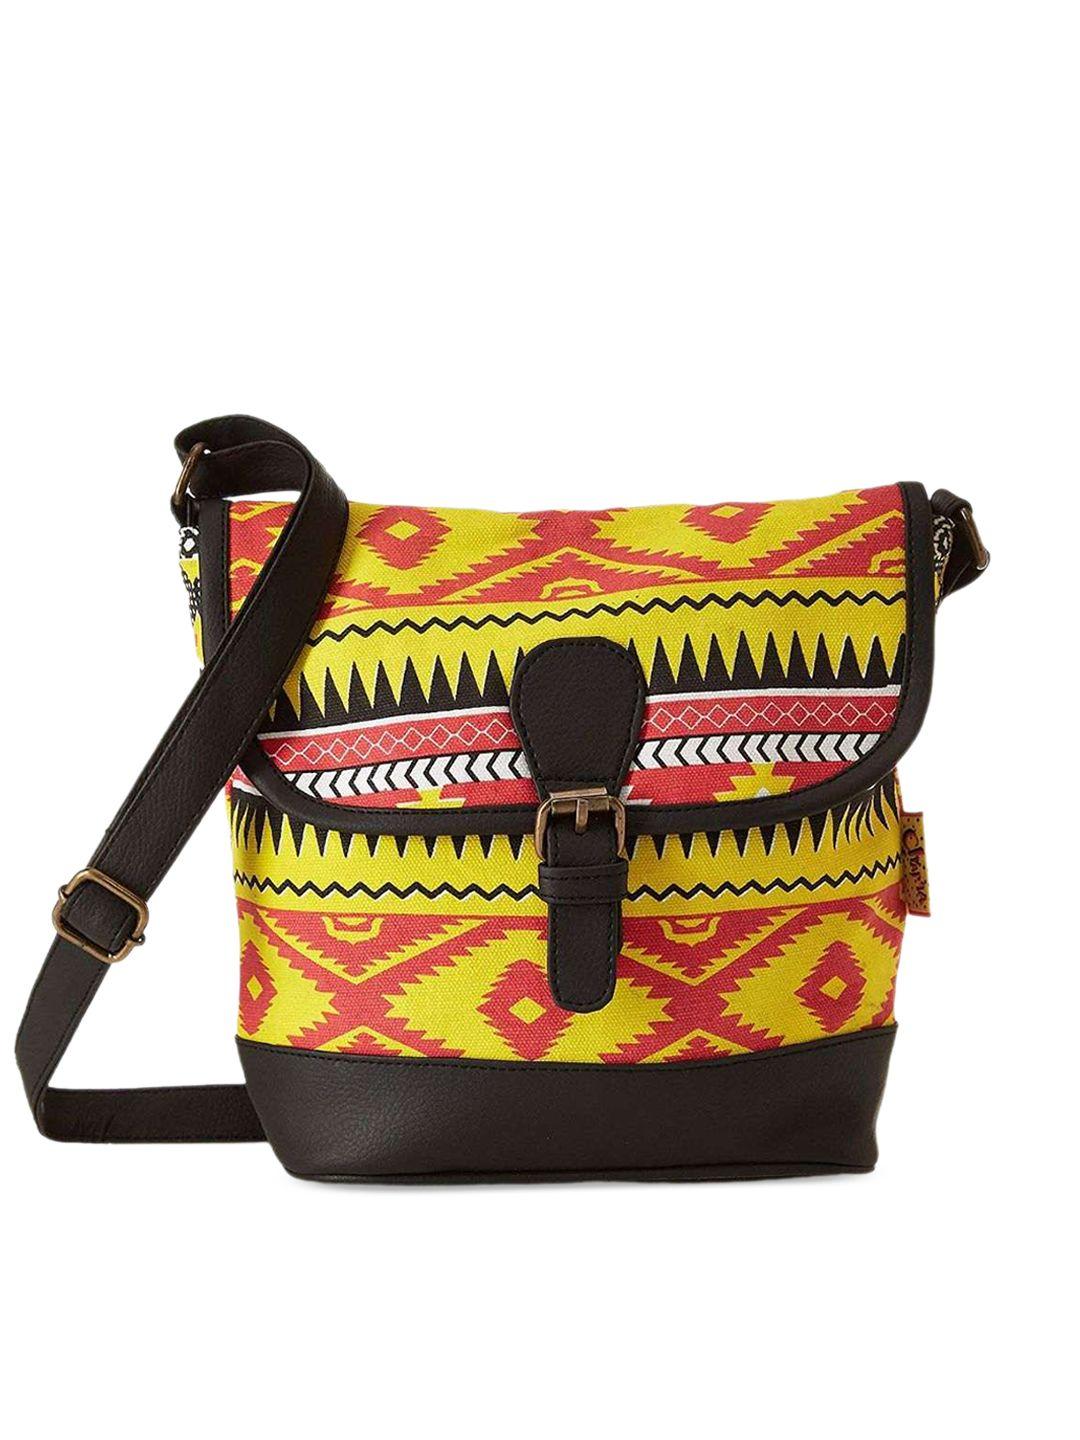 kanvas katha abstract printed shopper sling bag